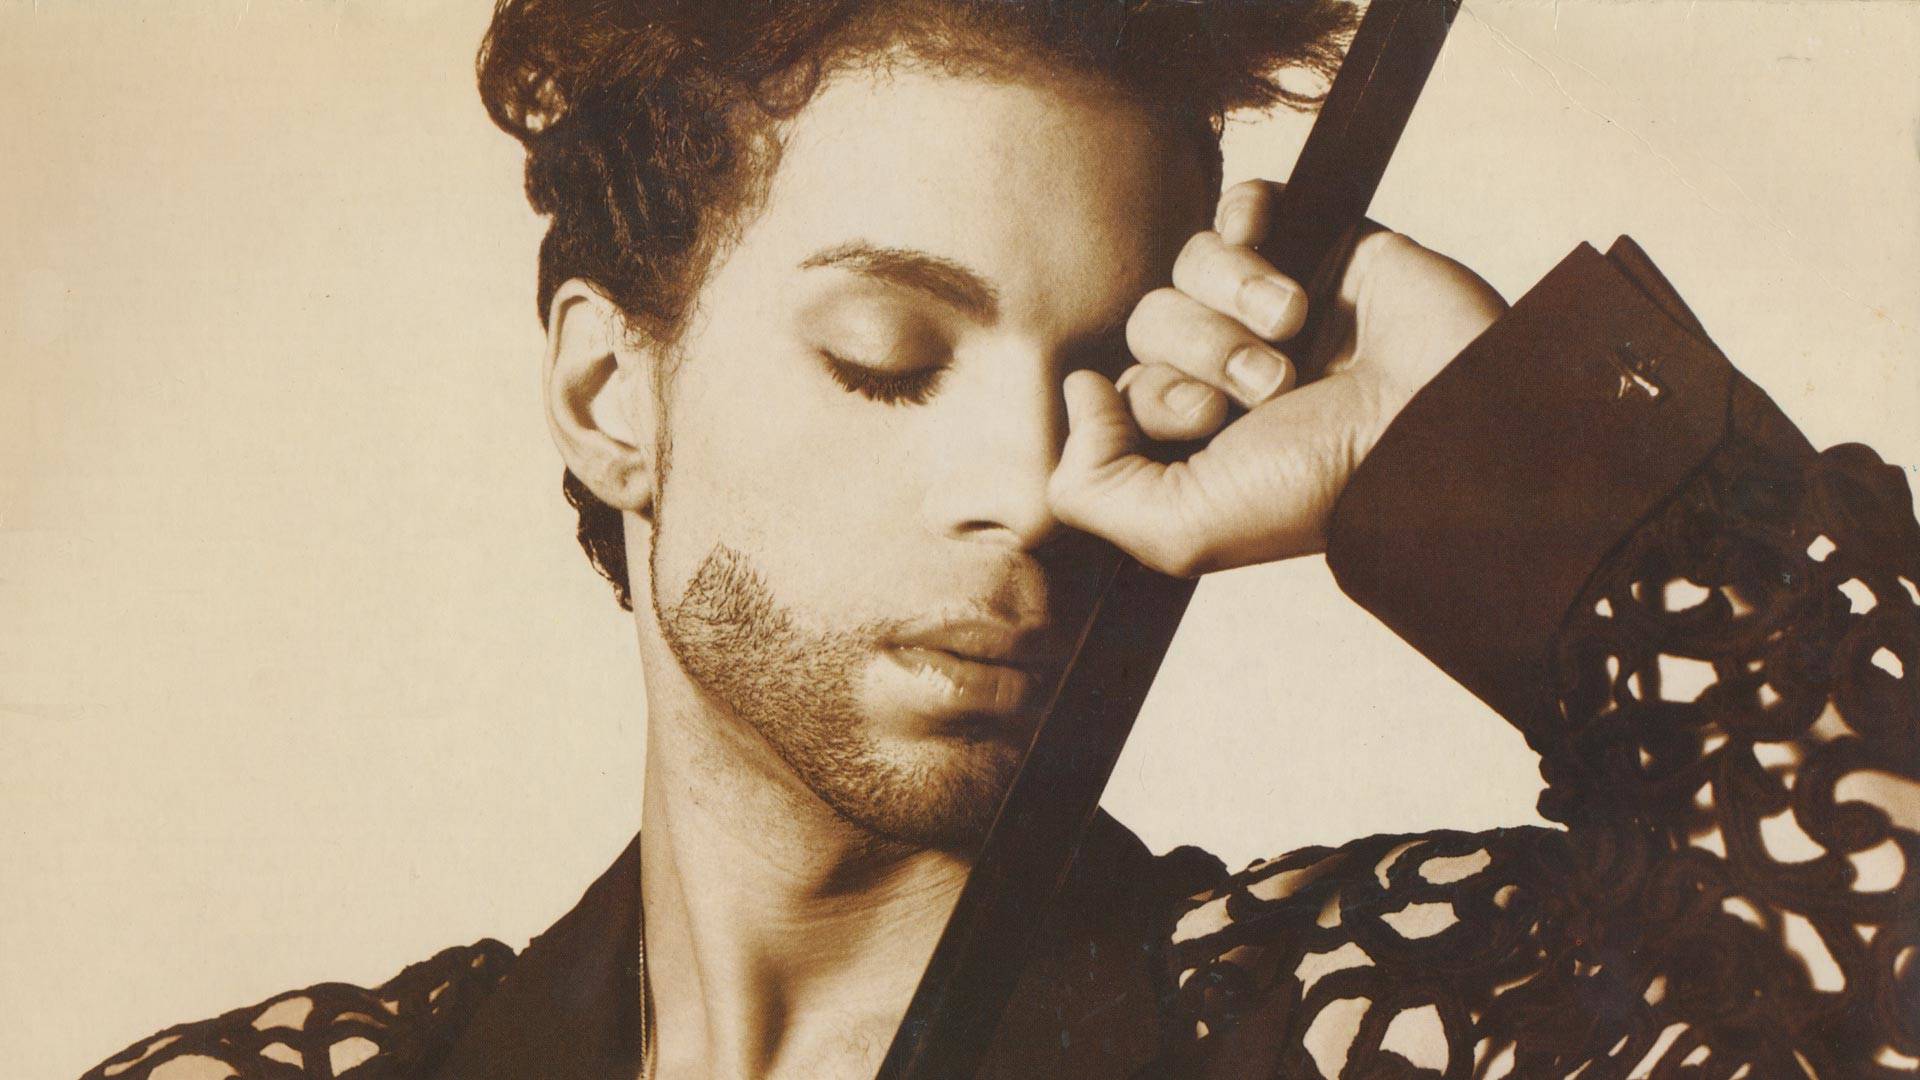 El mundo conmemora 8 años desde la muerte de Prince, el icónico artista de Minnesota.